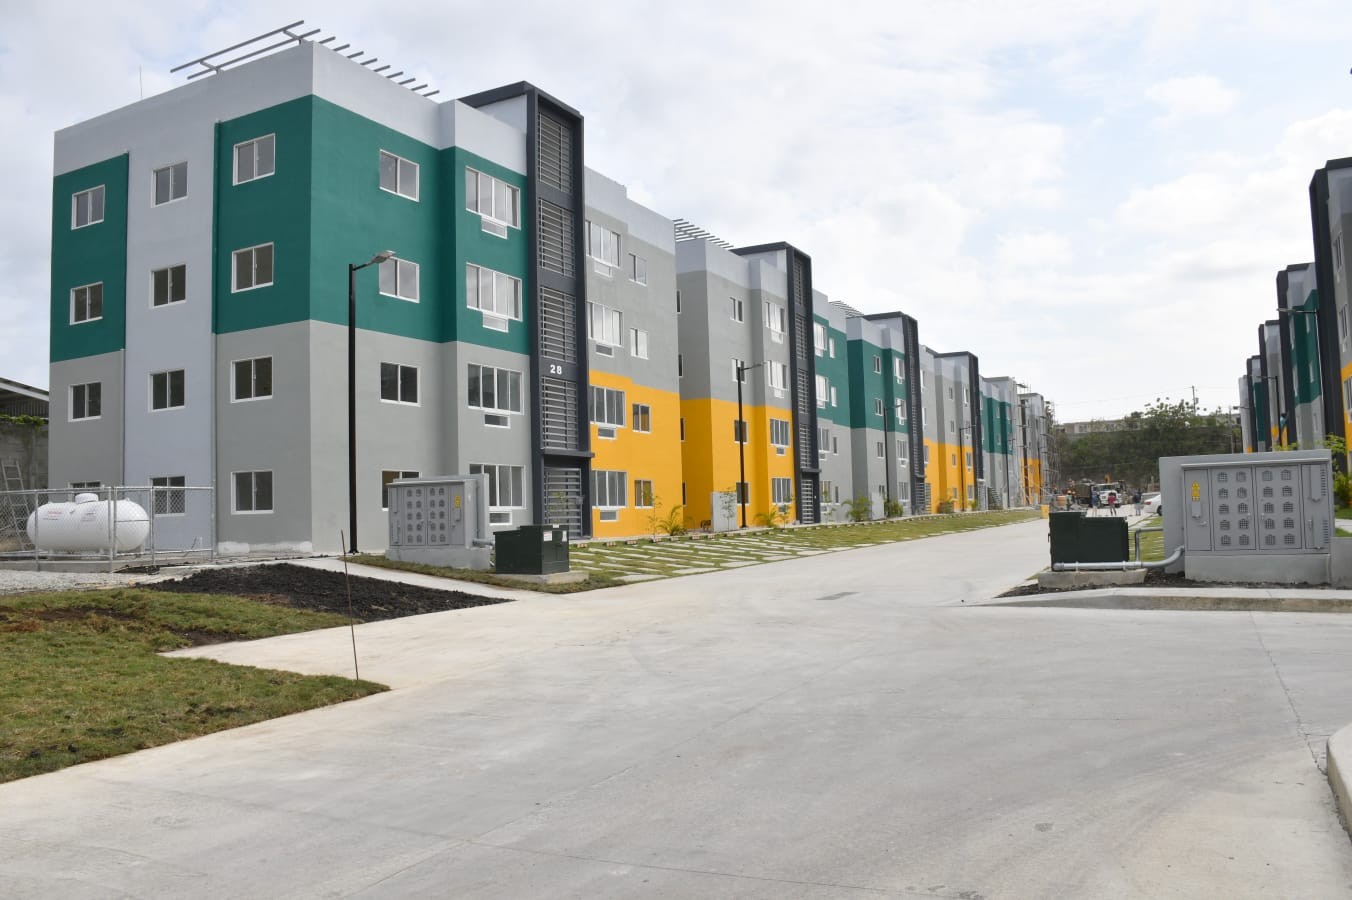 apartamentos - Se vende proyecto residencial en Santo Domingo Norte

US$75,000 3